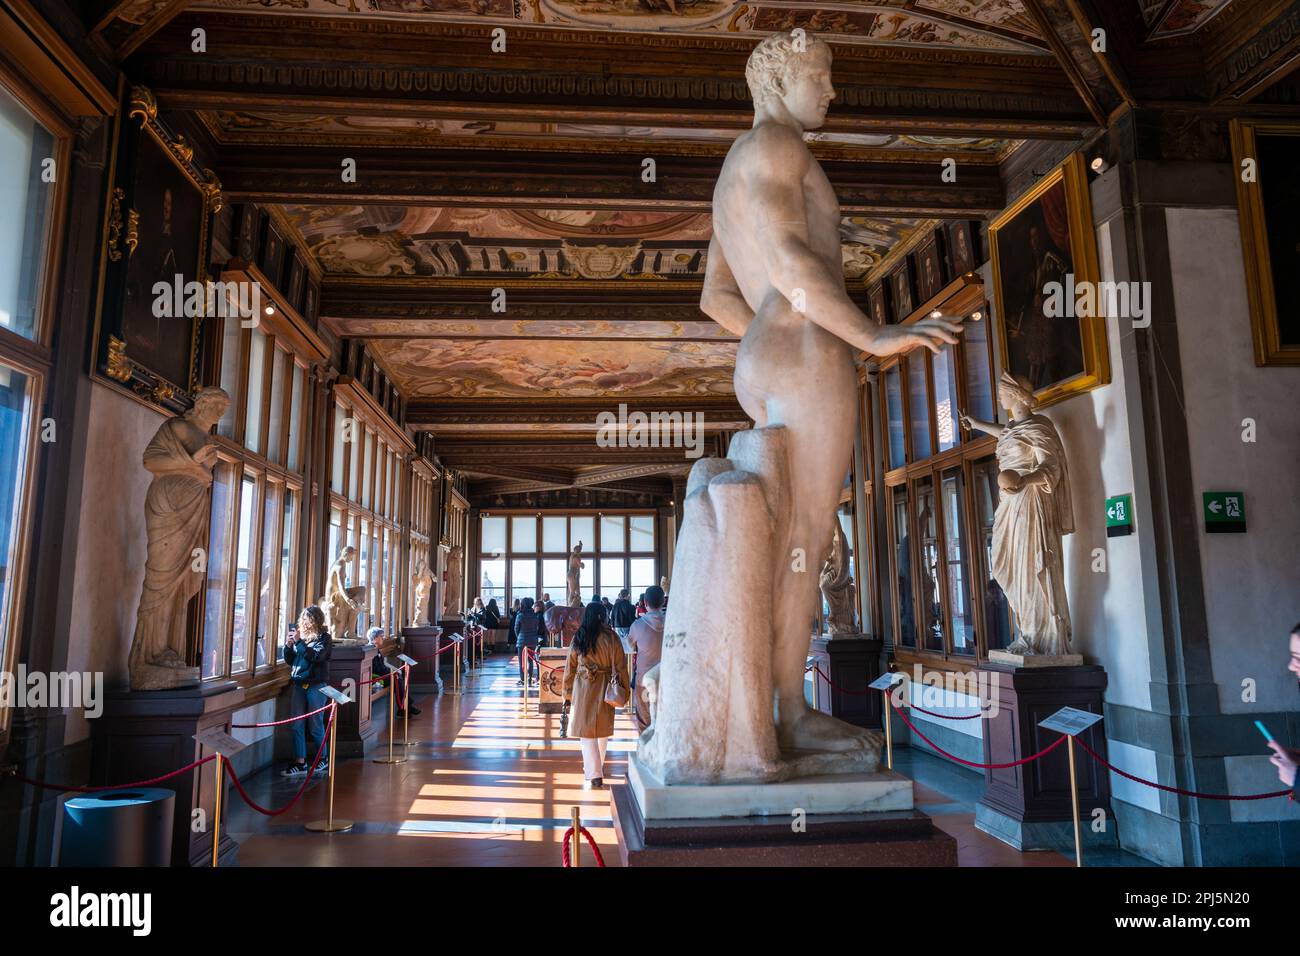 Uffizi art gallery, Florence, Italy Stock Photo